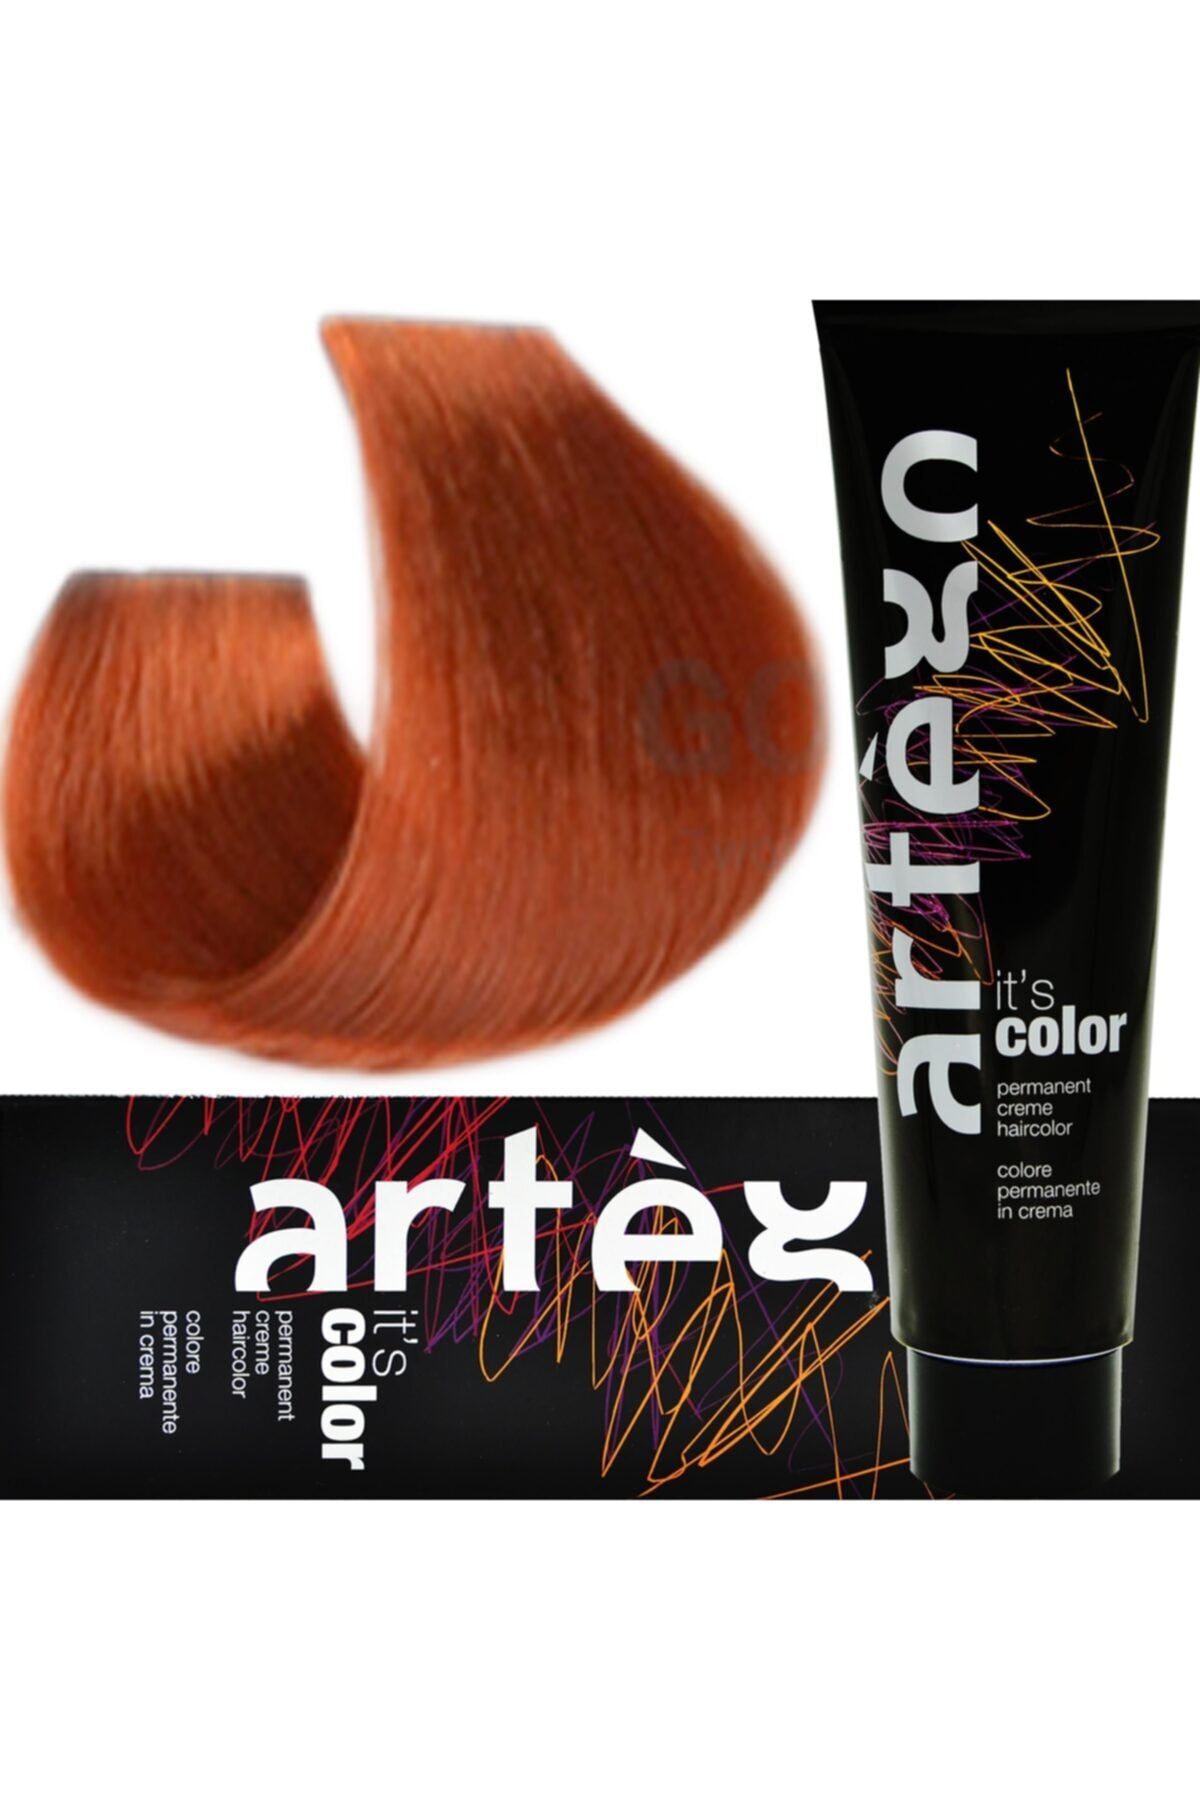 Artego New 9.44 It's Çok Açık Yoğun Bakır Sarı 150ml. Saç Boyası